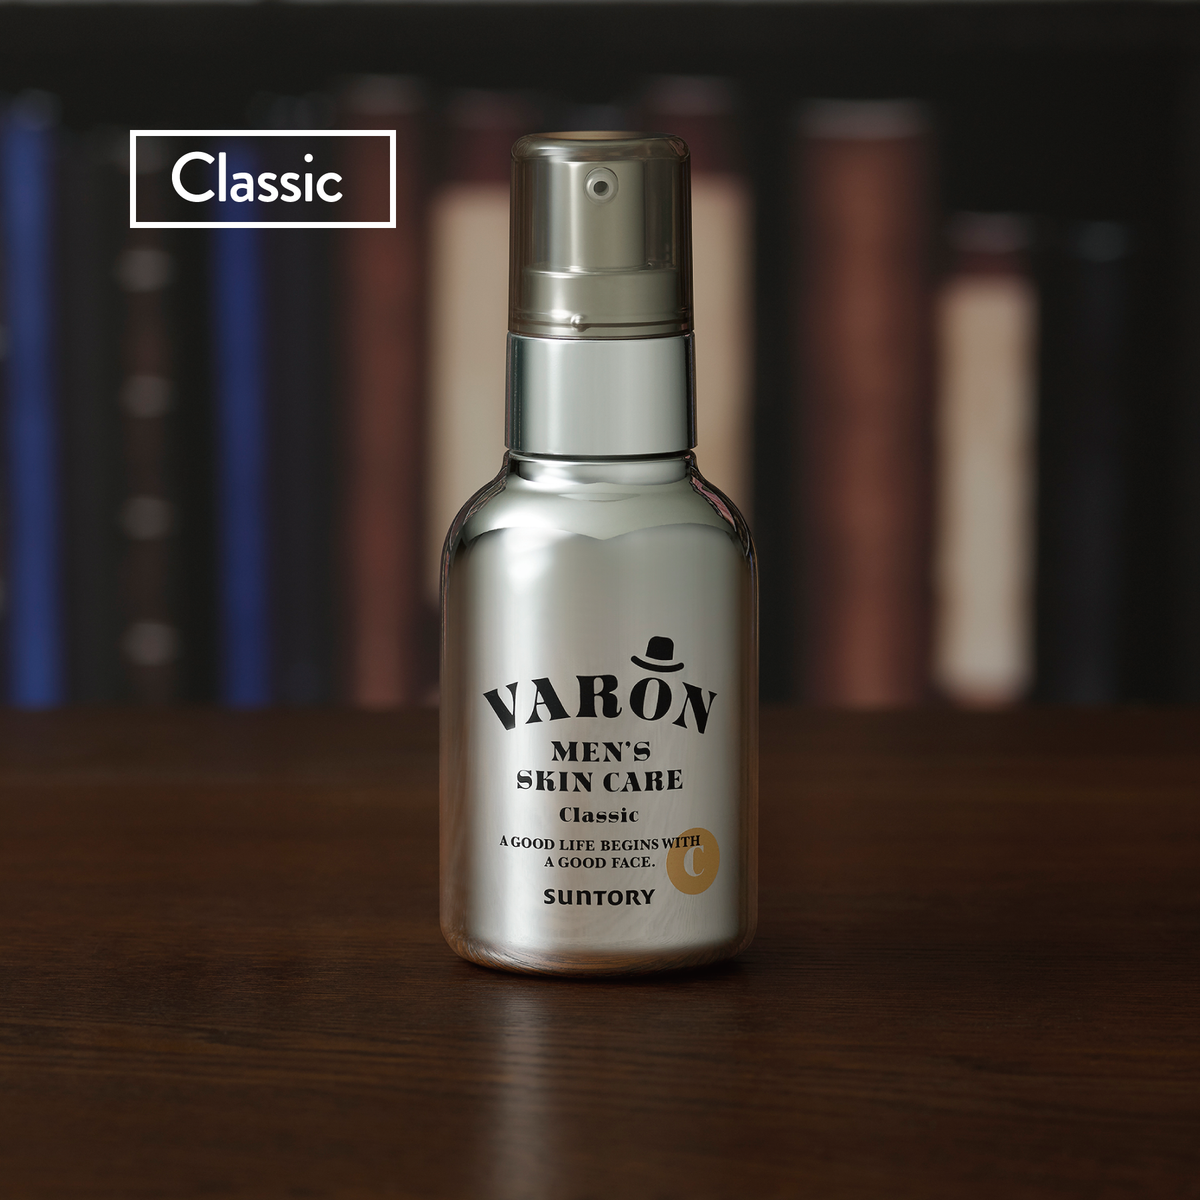 VARON (Classic) - A 3-in-1 men's skincare serum